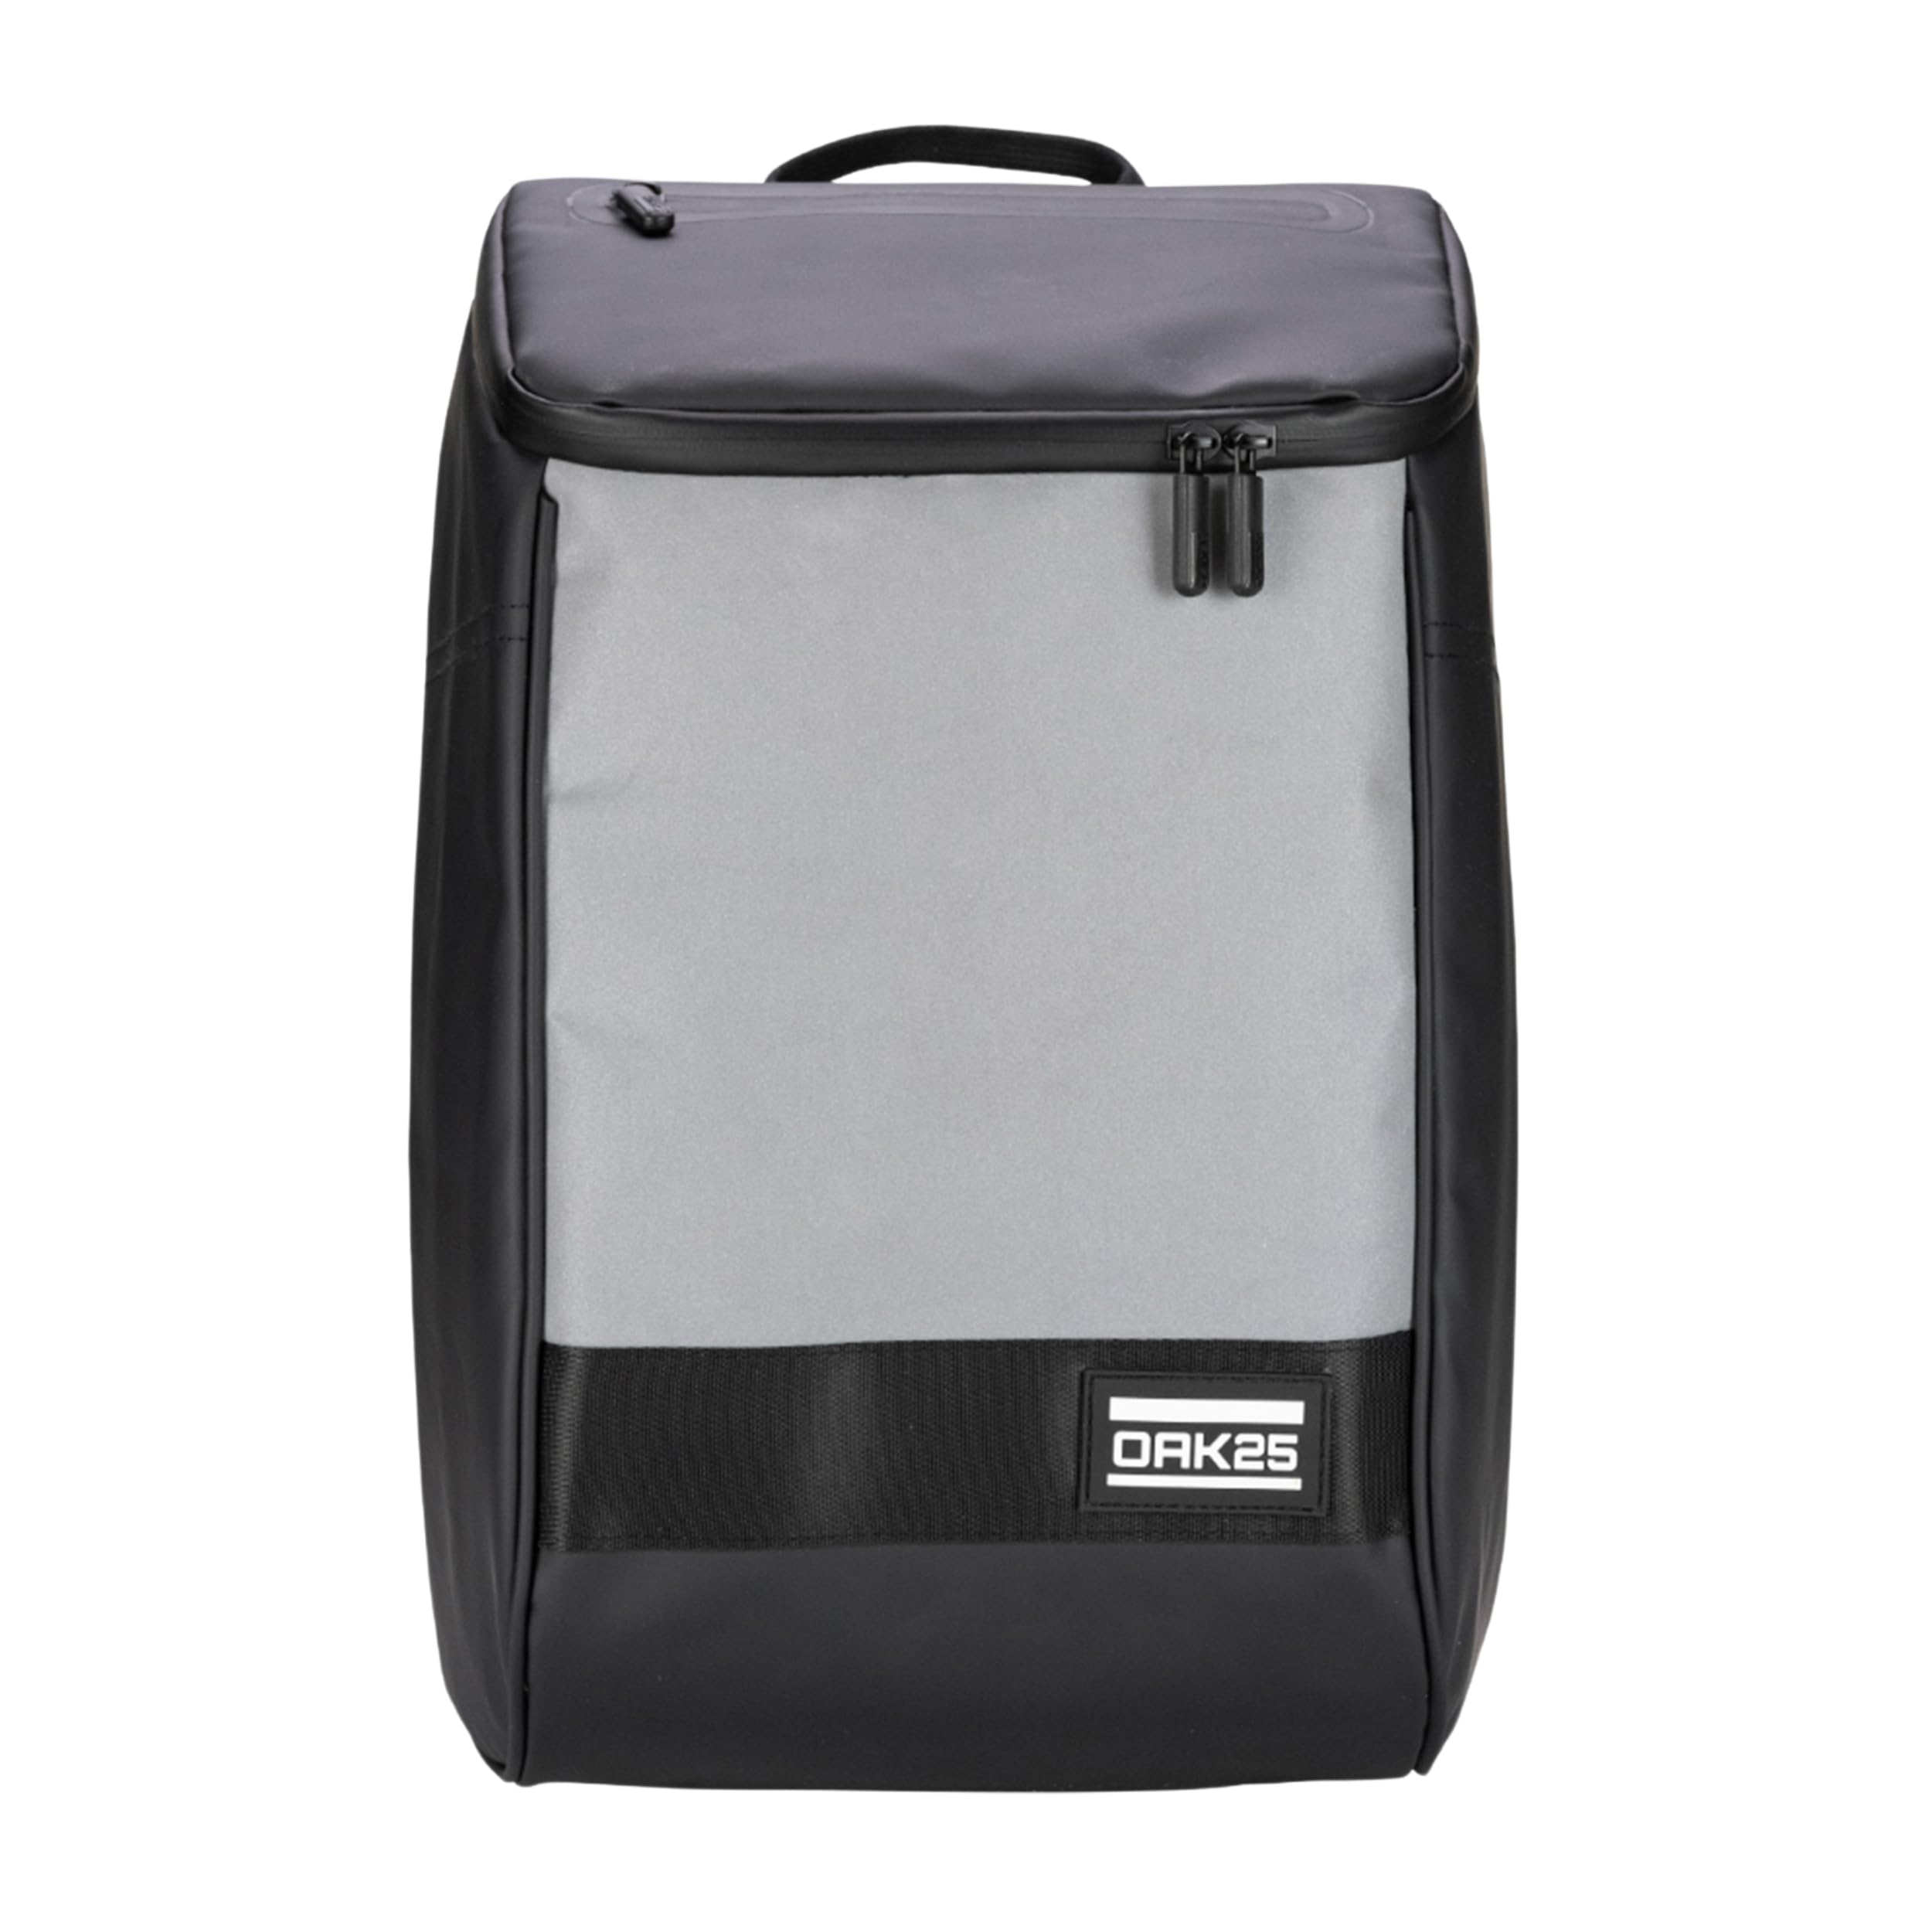 OAK25 Rucksack Damen & Herren Schwarz - Daybag - Reflektierender Fahrradrucksack - Hohe Sichtbarkeit & Sicherheit - Fahrrad Daypack mit Laptop Fach - Wasserabweisend